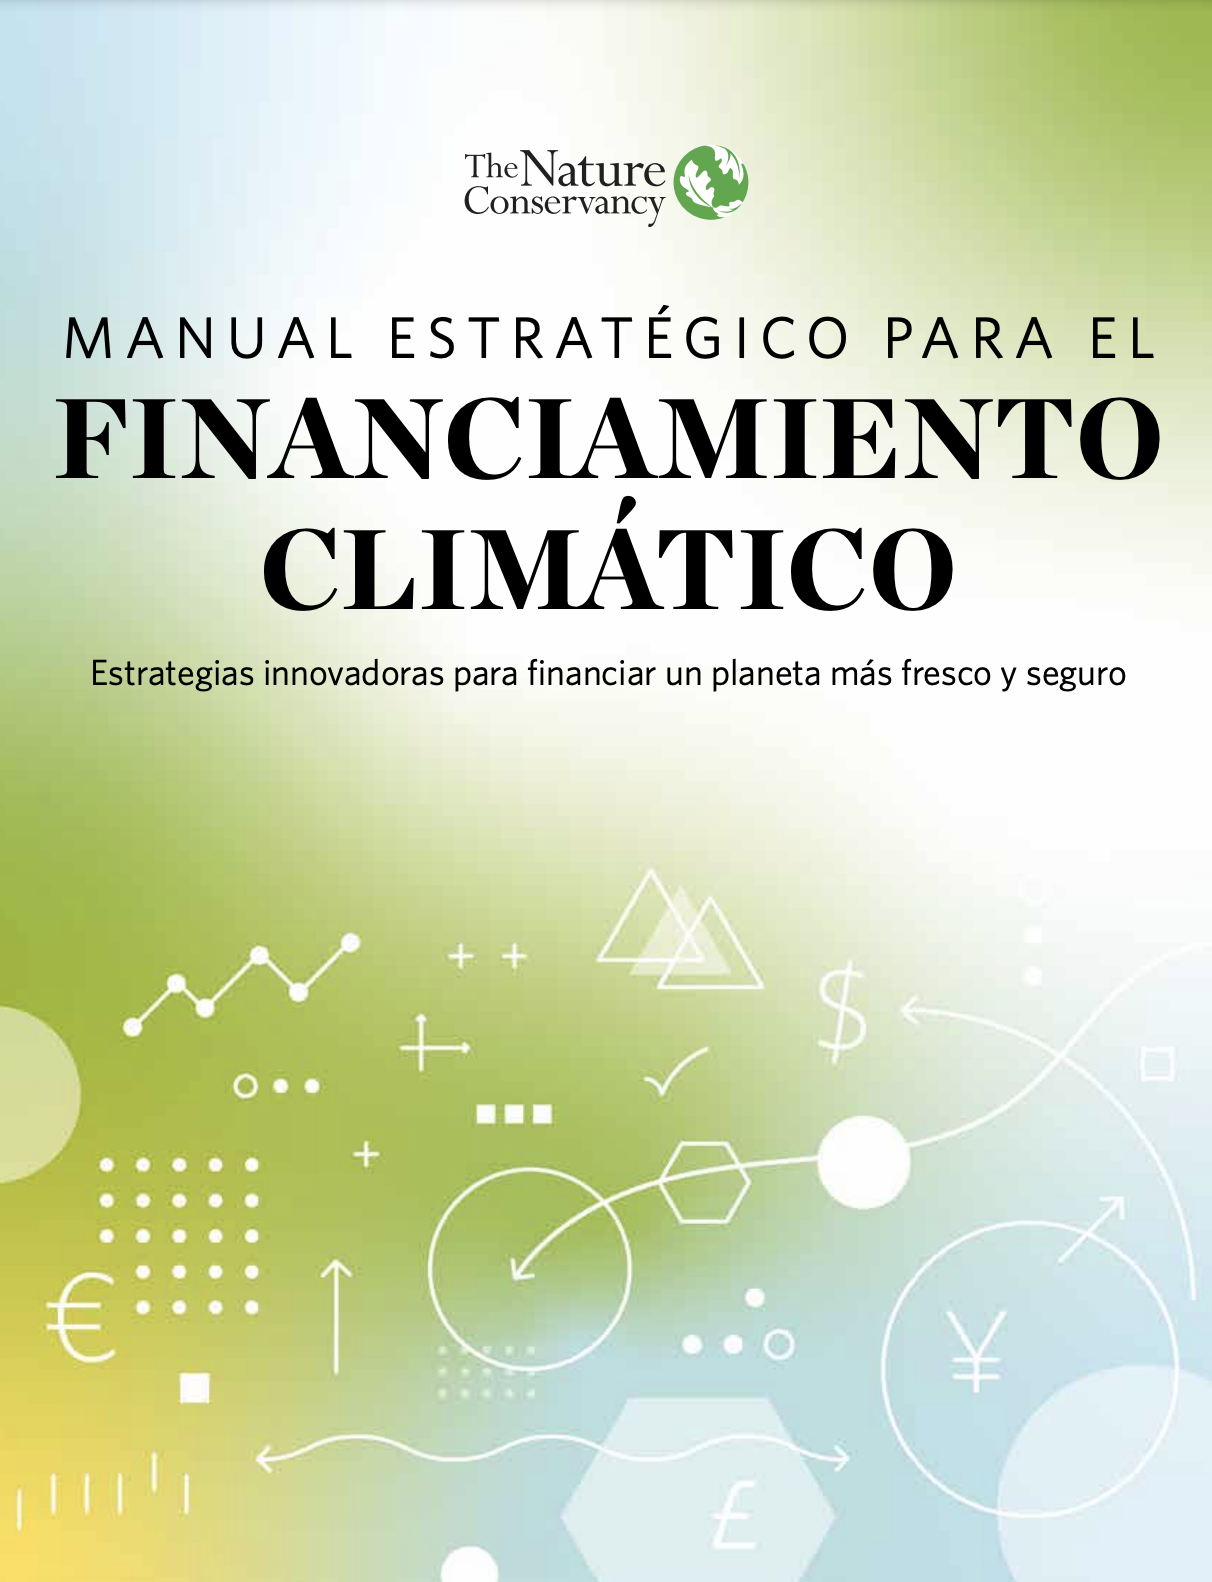 Manual Estratégico para el Financiamiento Climático (TNC)